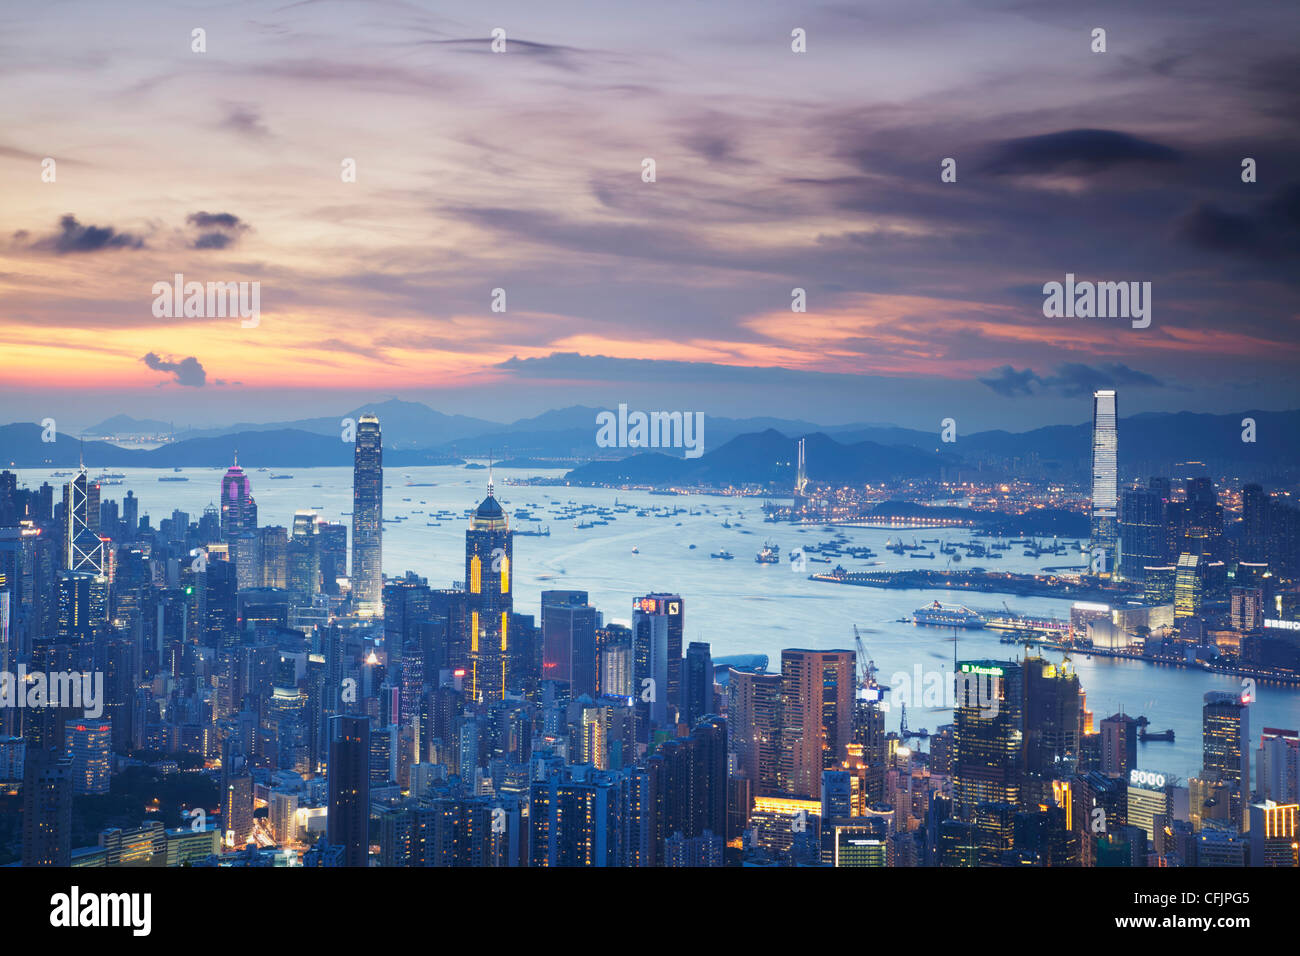 L'île de Hong Kong et Kowloon skylines au coucher du soleil, à Hong Kong, Chine, Asie Banque D'Images